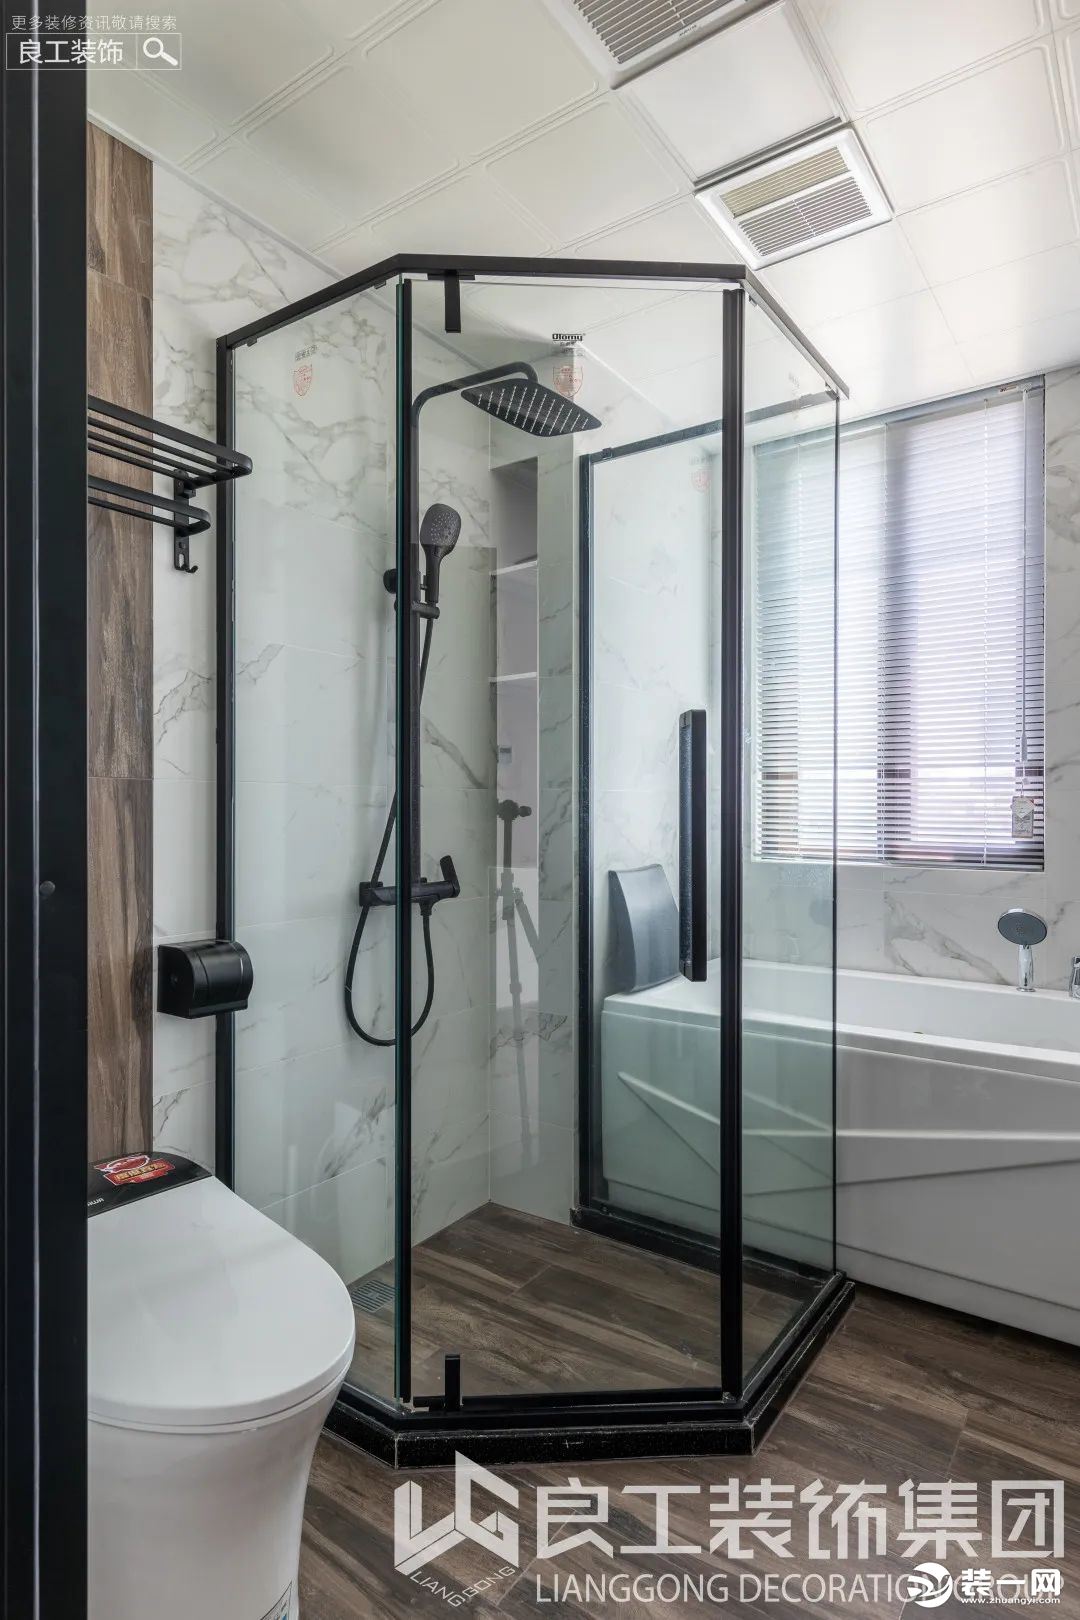 卫生间以大理石和木饰面结合，简约于形，优雅于里。淋浴房的黑色边框利落有型，赋予卫浴空间时尚气韵